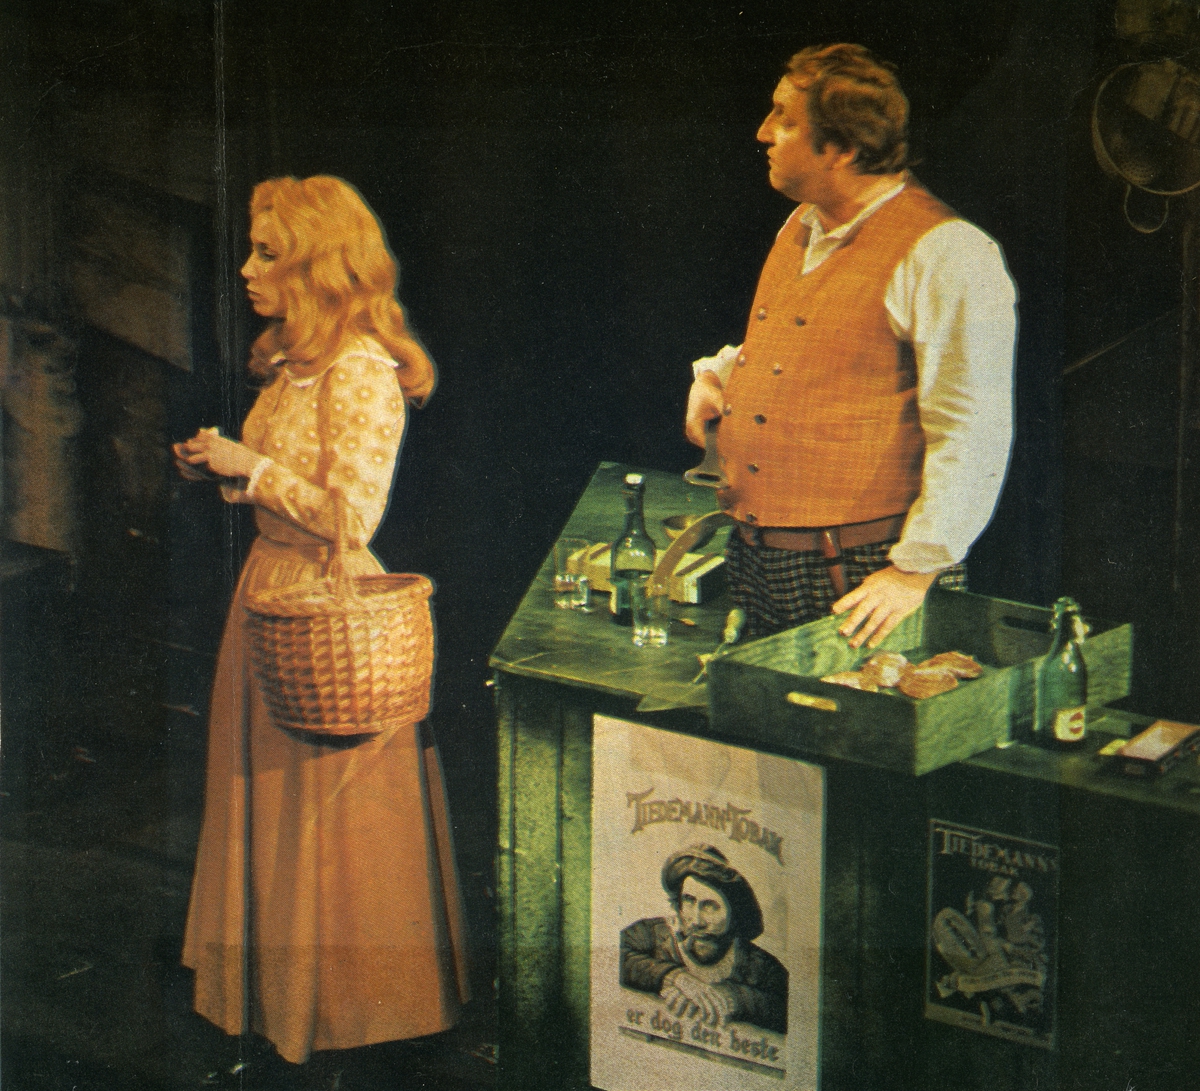 Teaterforestillingen Bør Børsen på Det Norske Teater våren 1972. Reklameplakat for Tiedemanns Tobak som en del av kulissen.